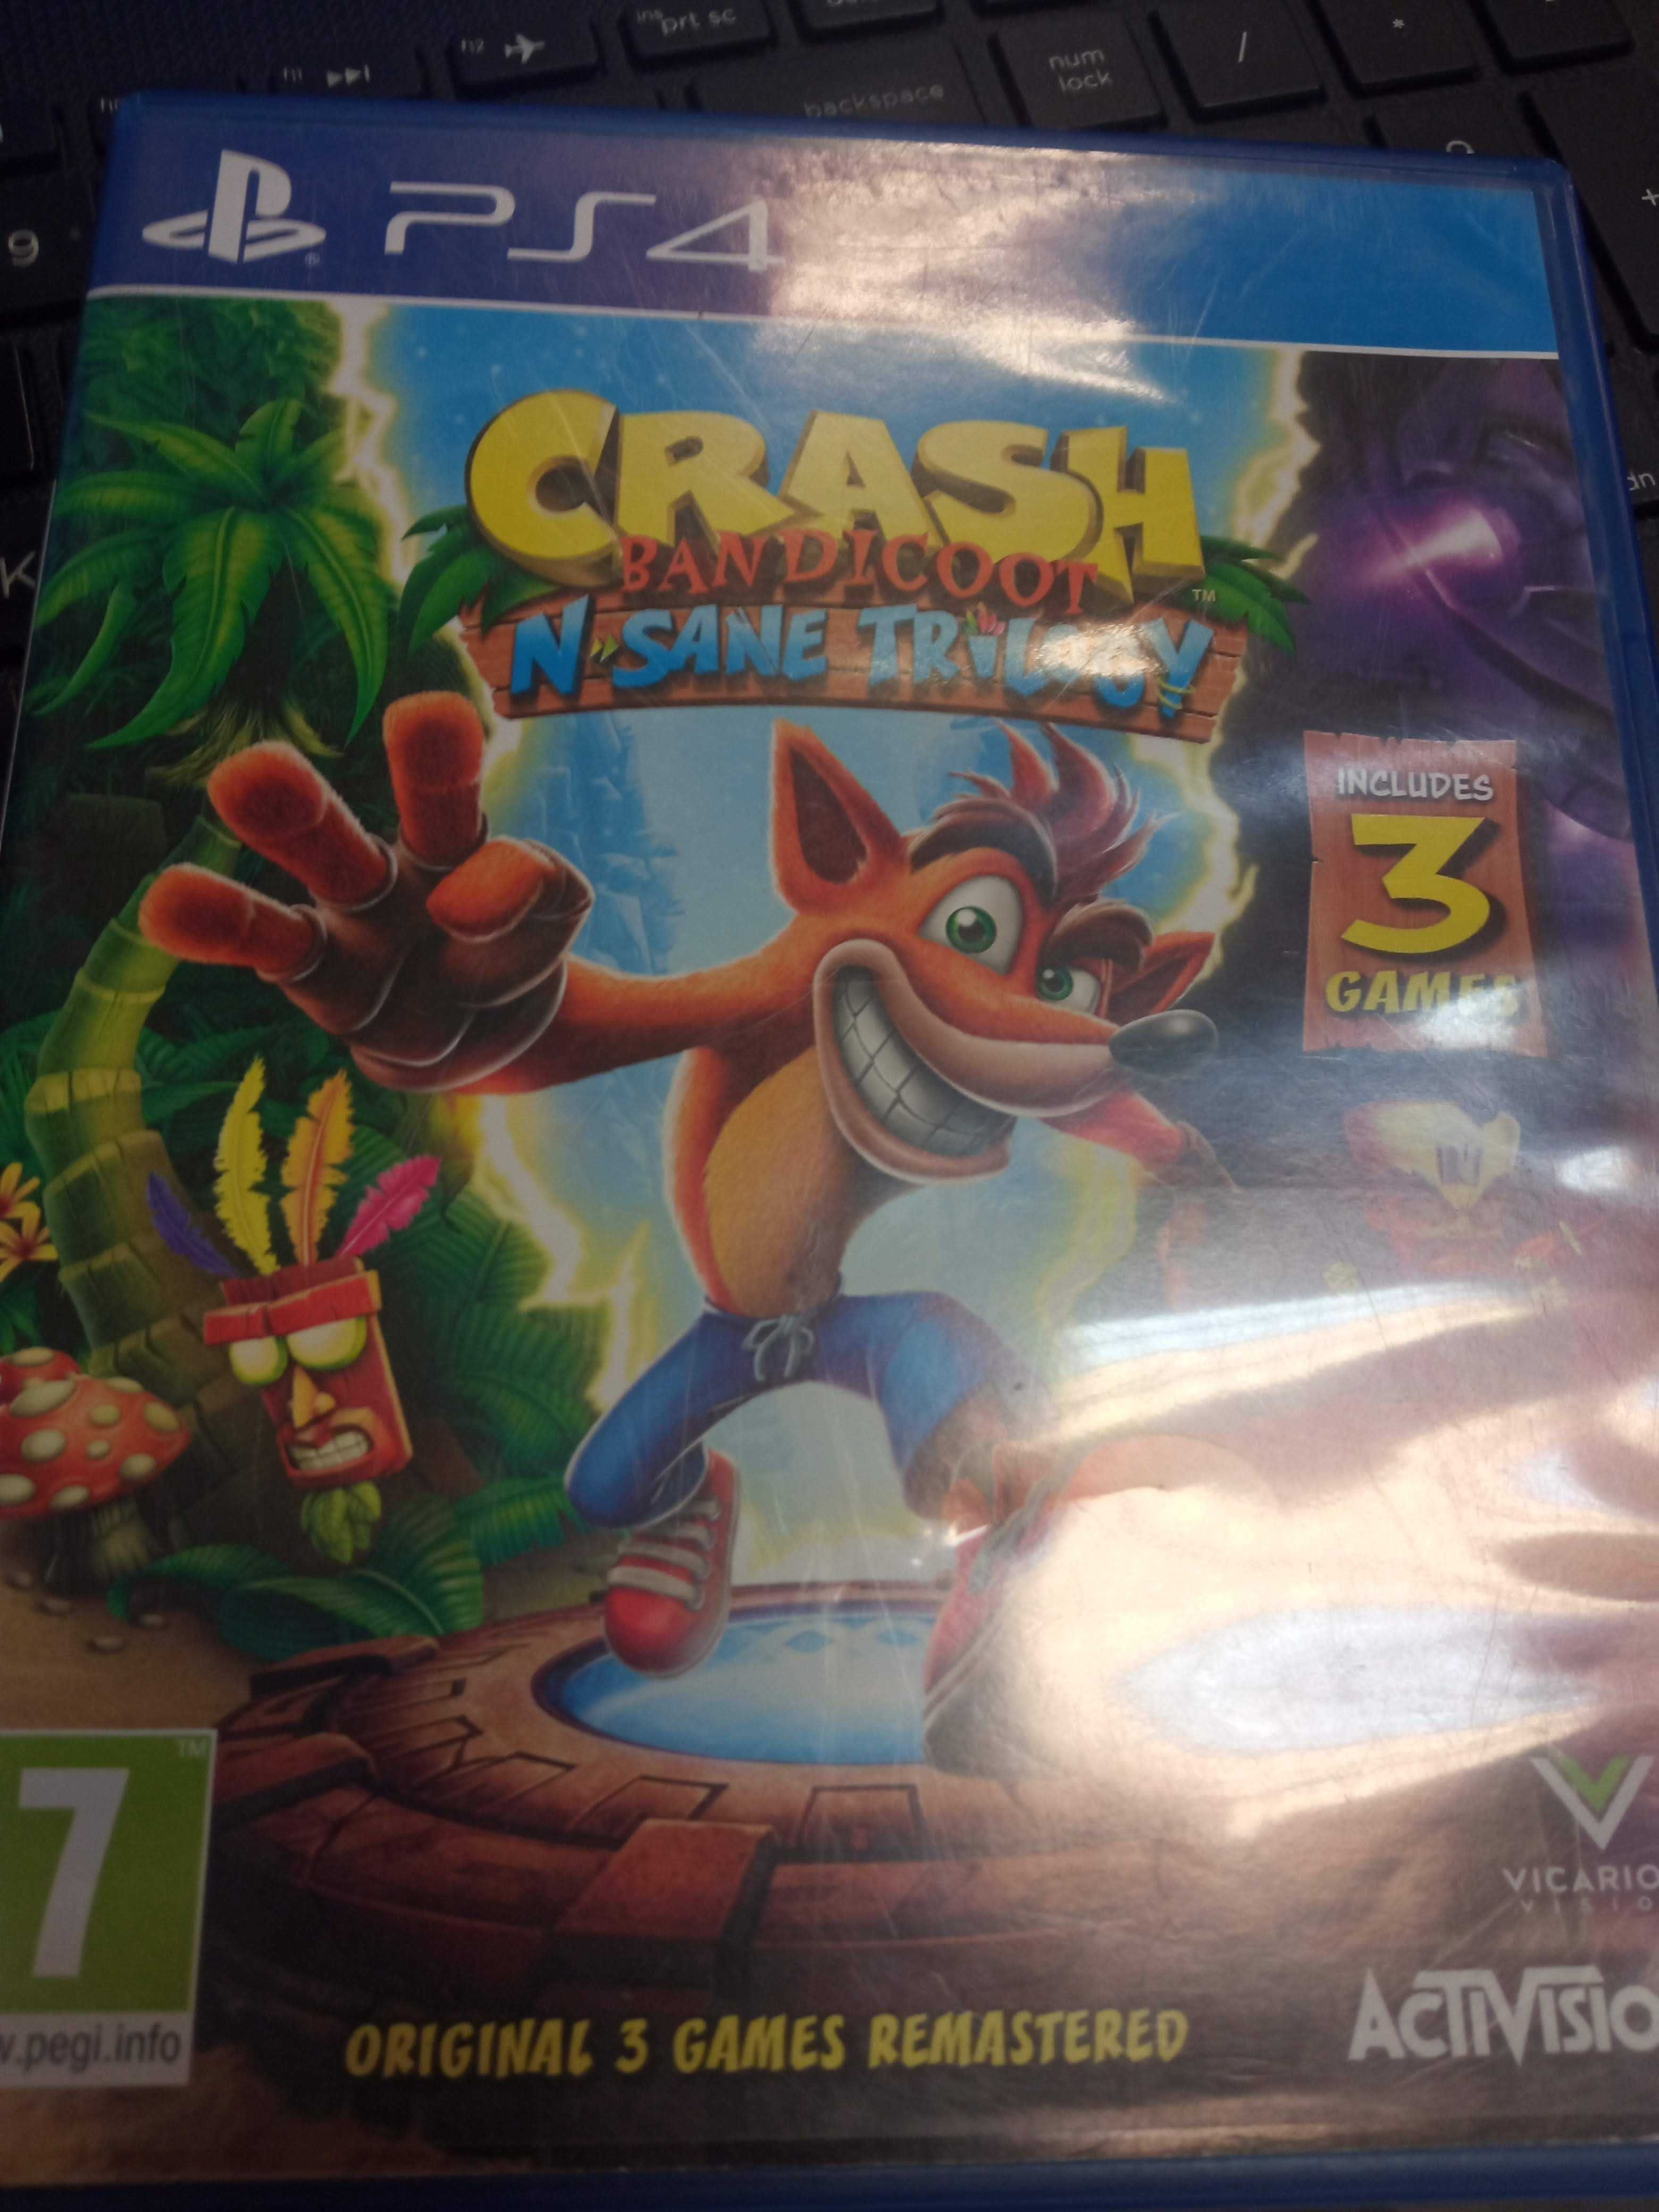 PS4 Crash bandicoot